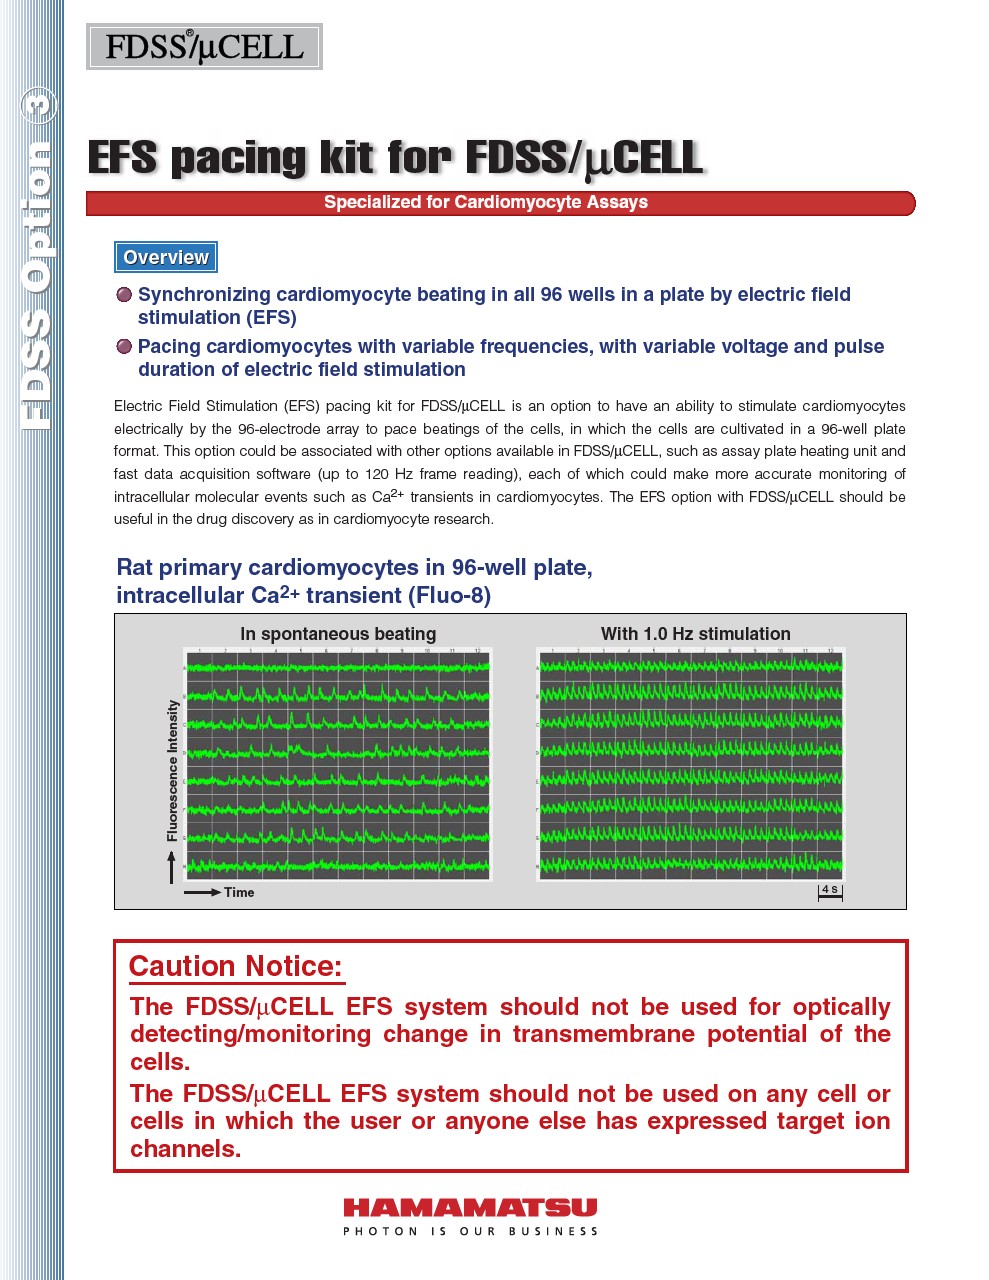 FDSS Option 3 EFS pacing kit for FDSS/uCELL